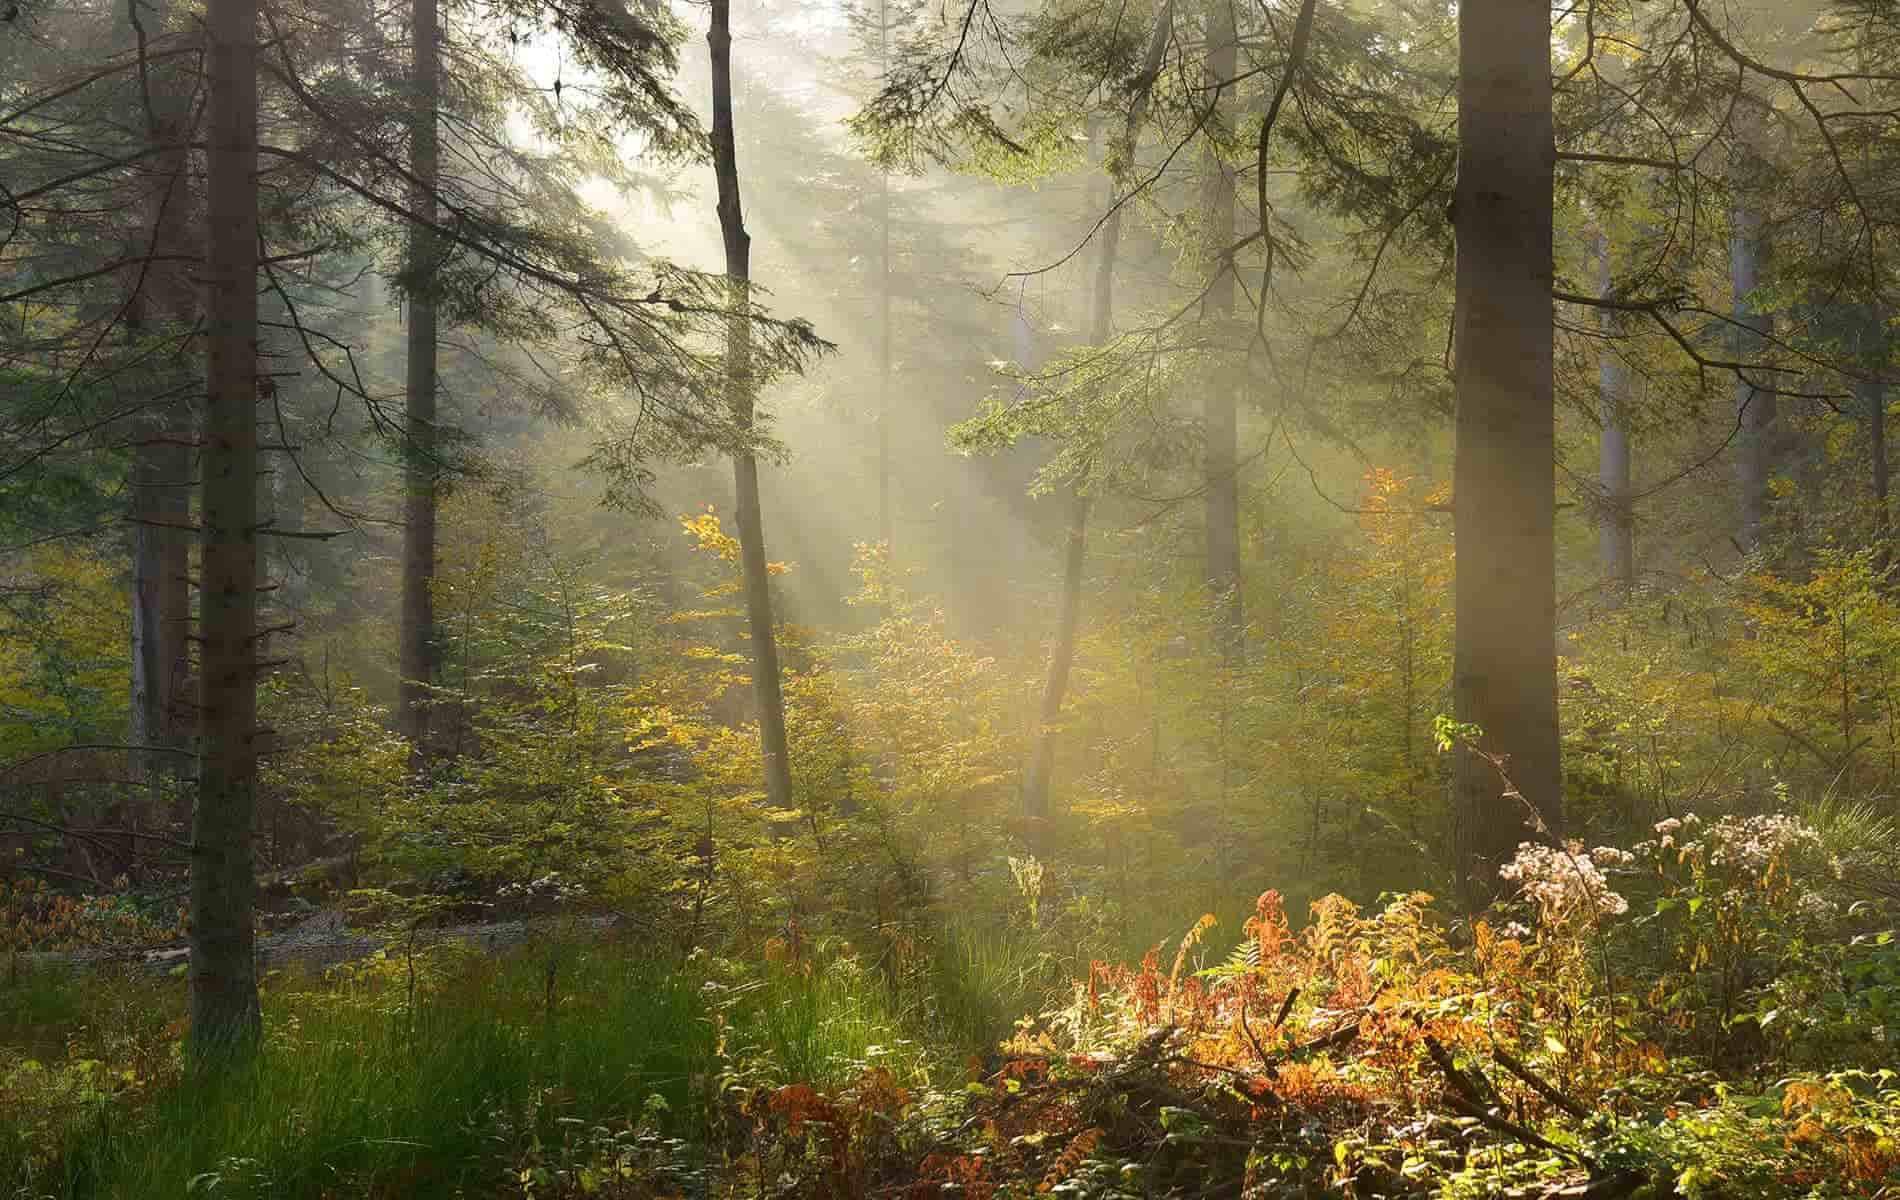 Auszeit im Wald in Bad Dürrheim tut auch deinen Atemwegen gut - Biohacking Bad Dürrheim